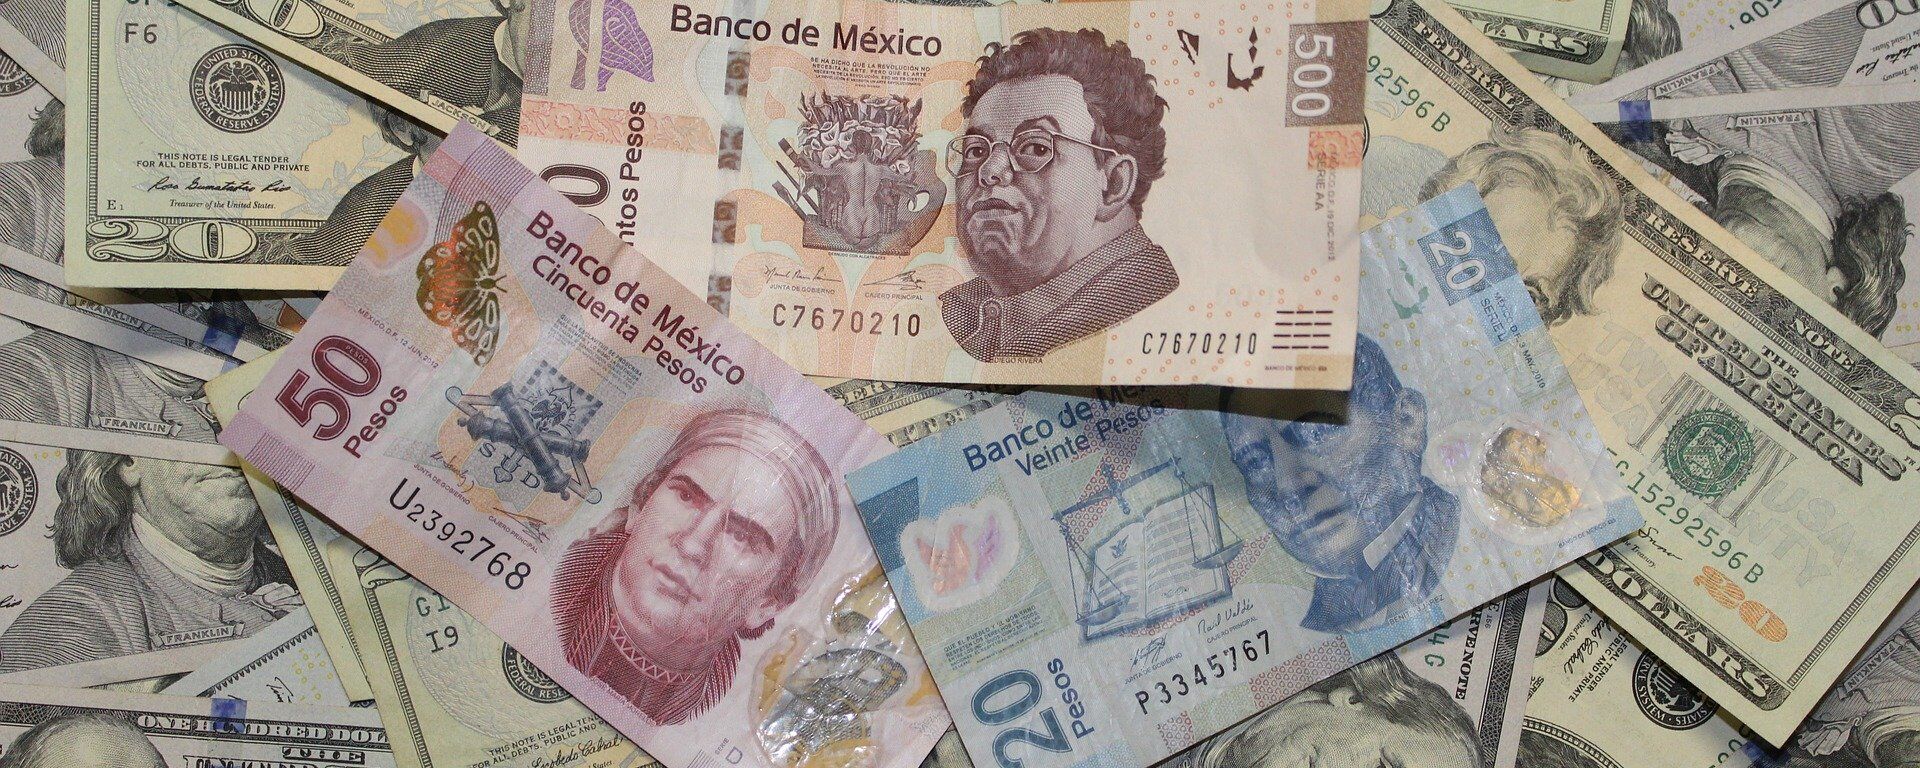 Pesos mexicanos y dólares estadounidenses - Sputnik Mundo, 1920, 06.08.2021